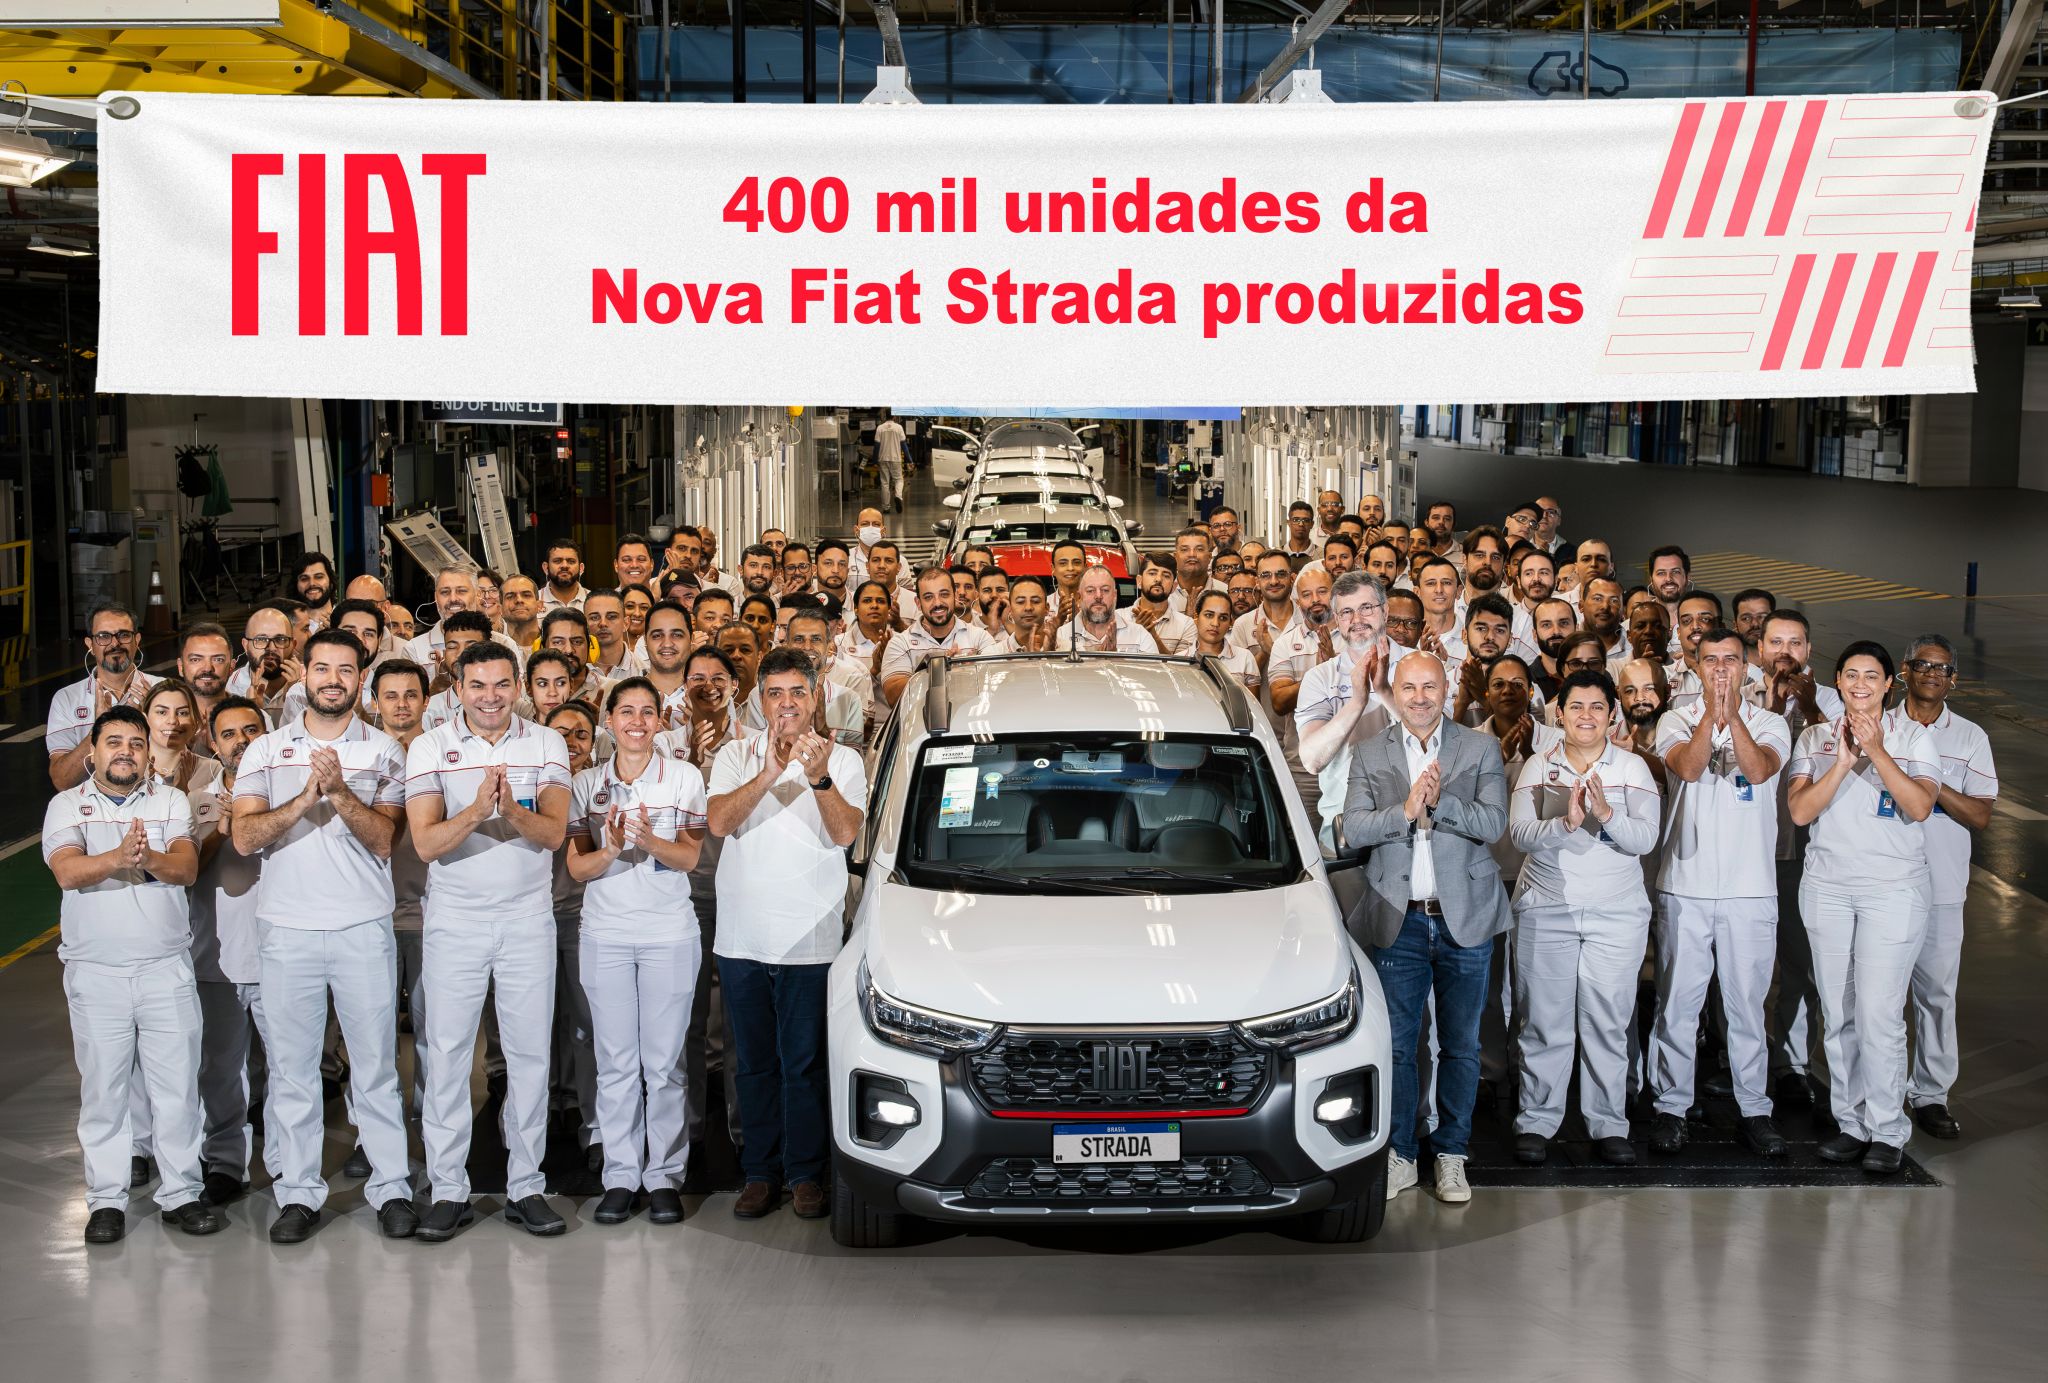 Fiat Strada segunda geração atinge 400.000 unidades produzidas 